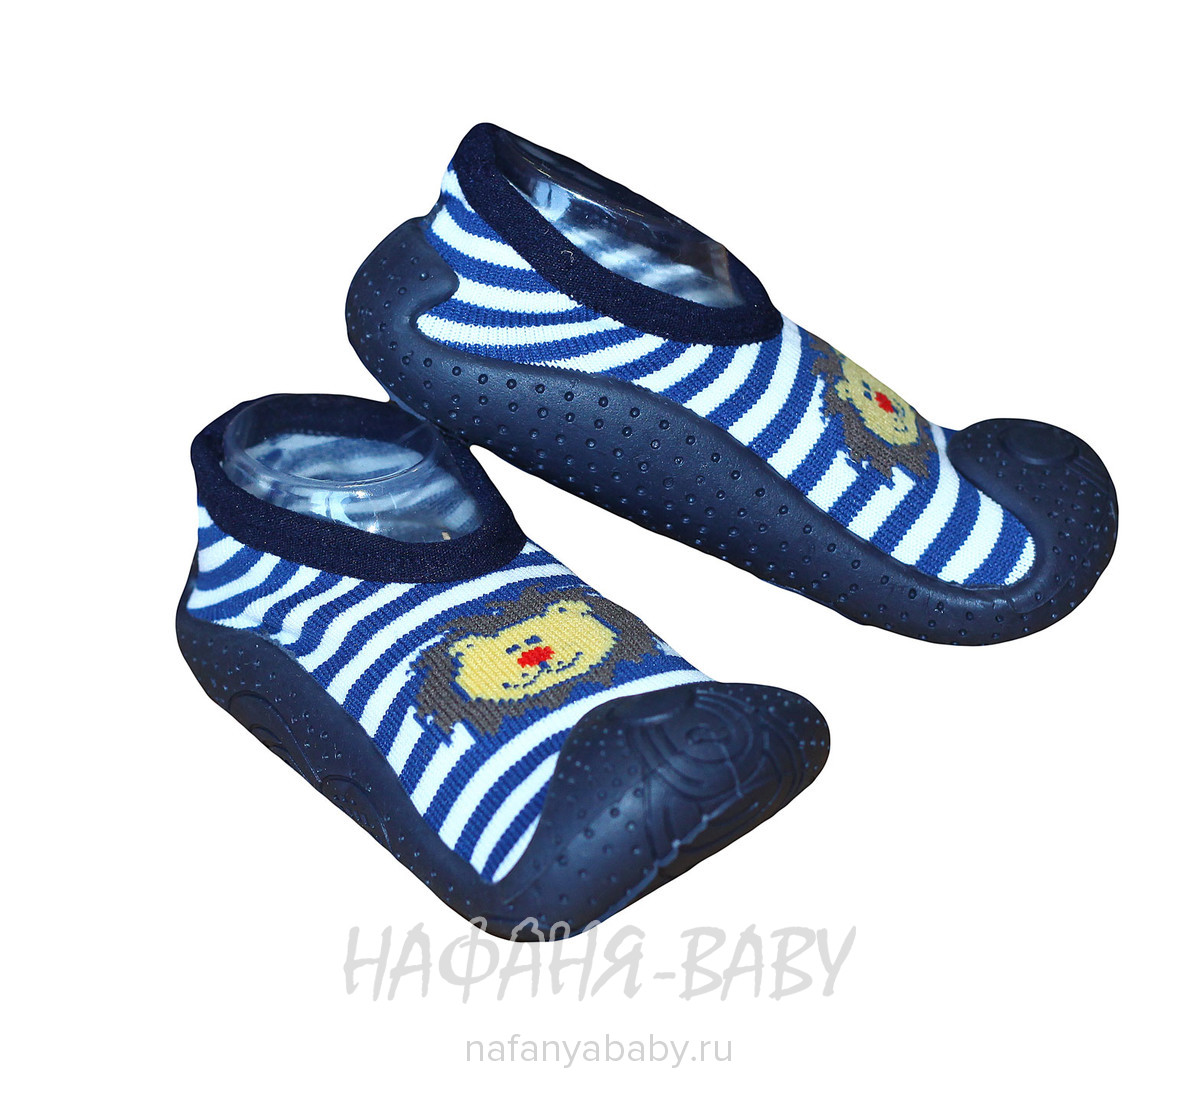 Ботиночки - носочки Fluo Sand, купить в интернет магазине Нафаня. арт: 7054.